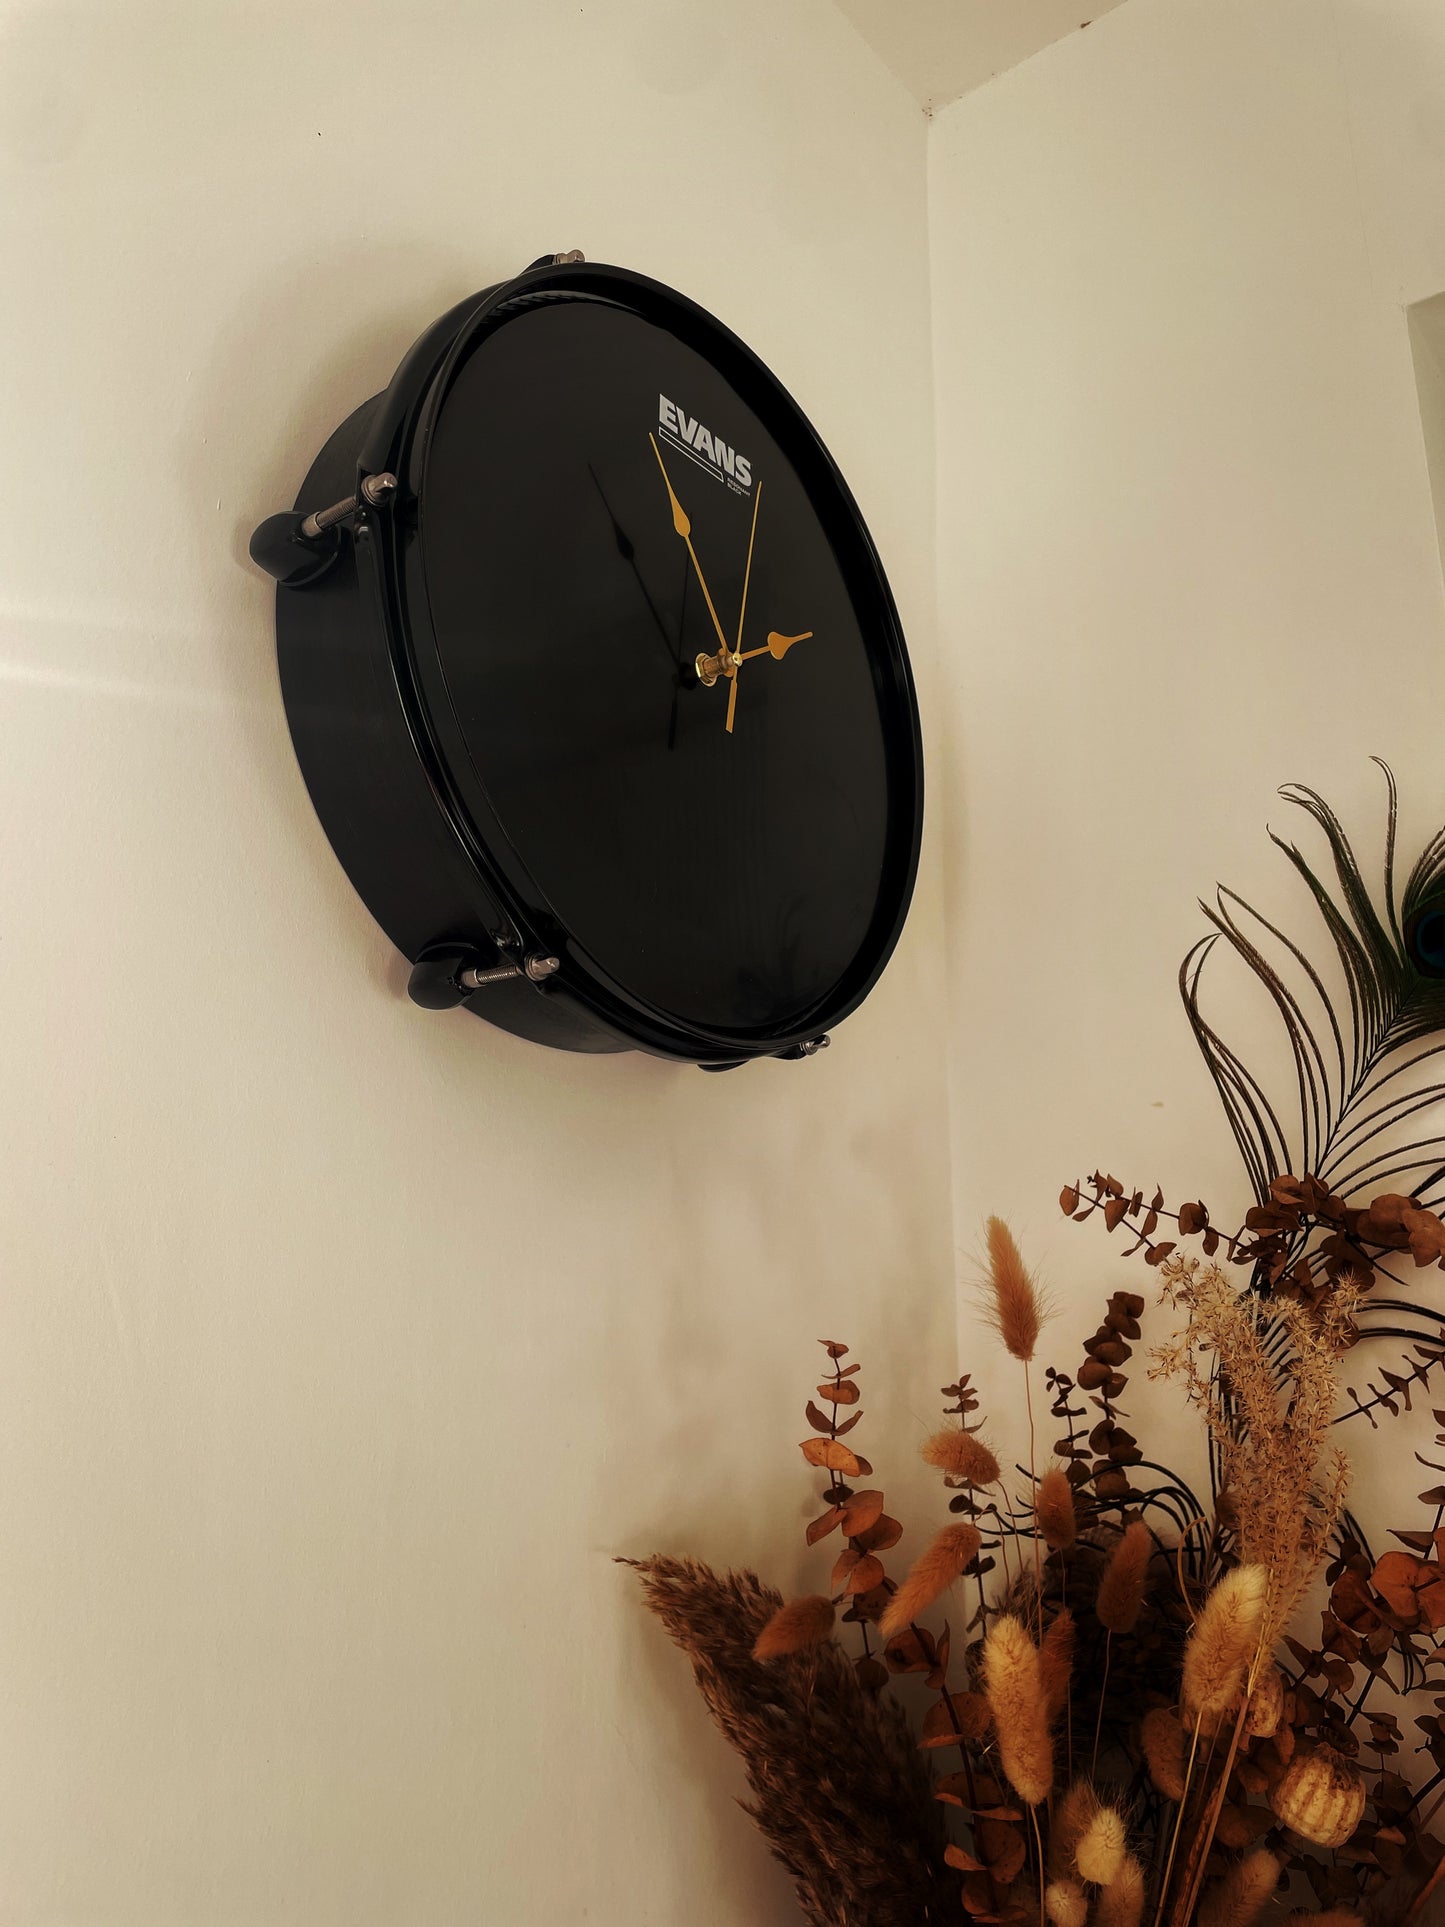 EVANS Drum Clock / Wall Mounted 12” Drum Clock / Black / Upcycled Drum / Drum Kit